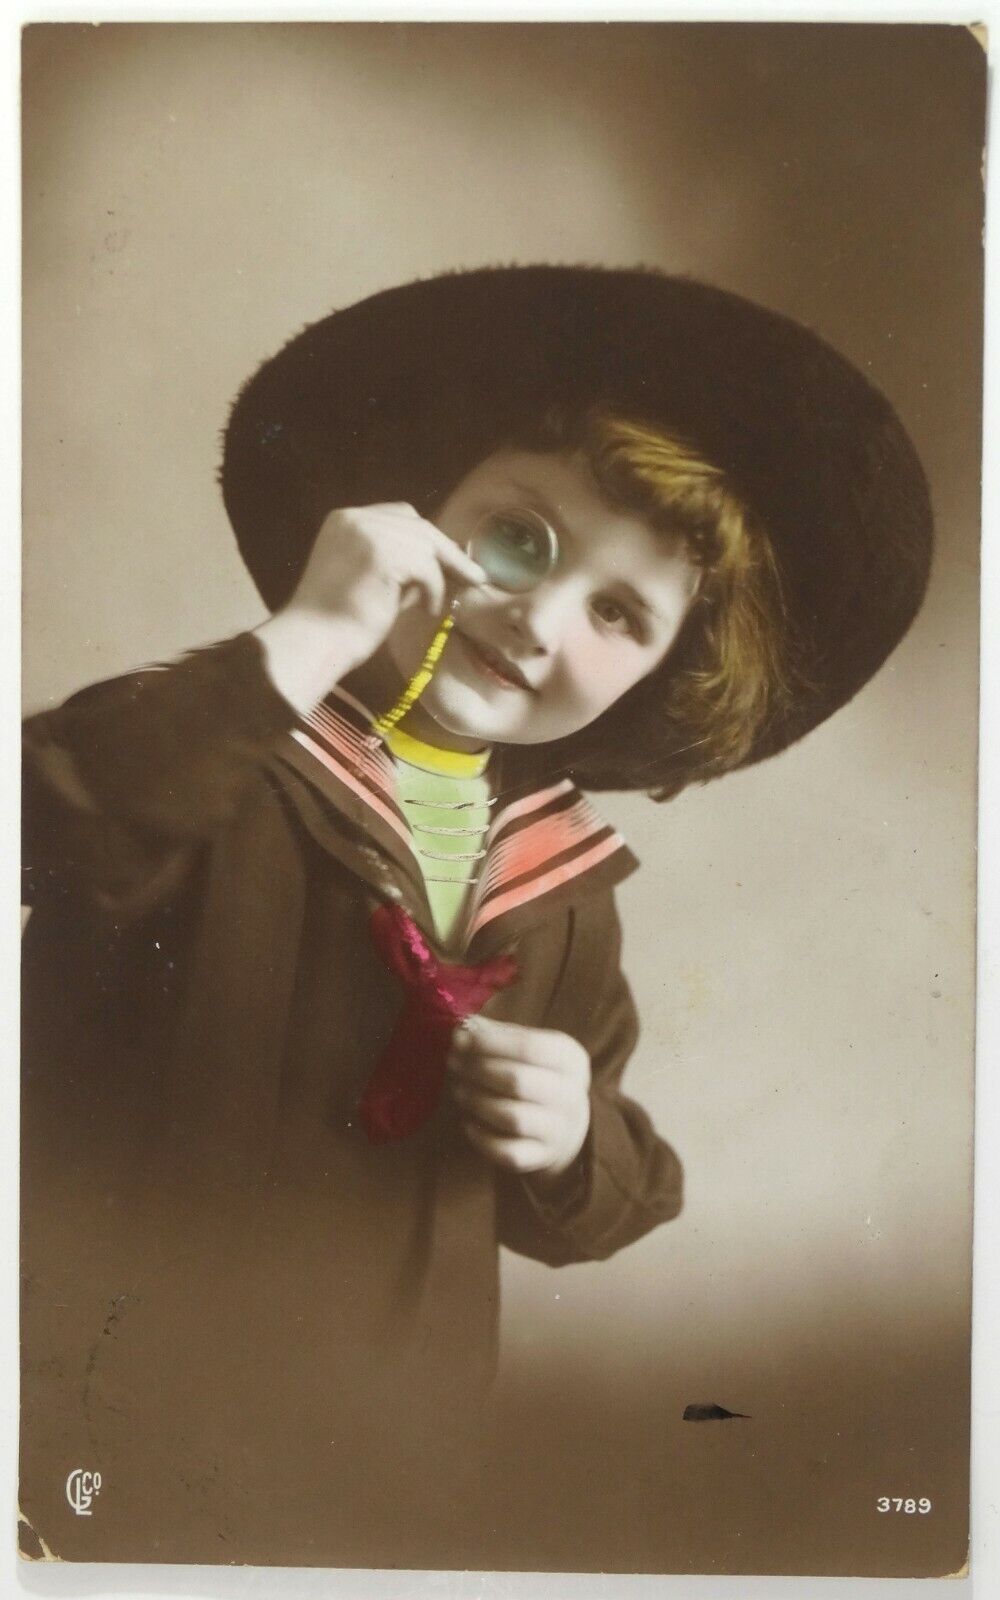 1912 Original Photo RPPC Edwardian Boy Sailor Suit Monocle Hand Tint 1A13